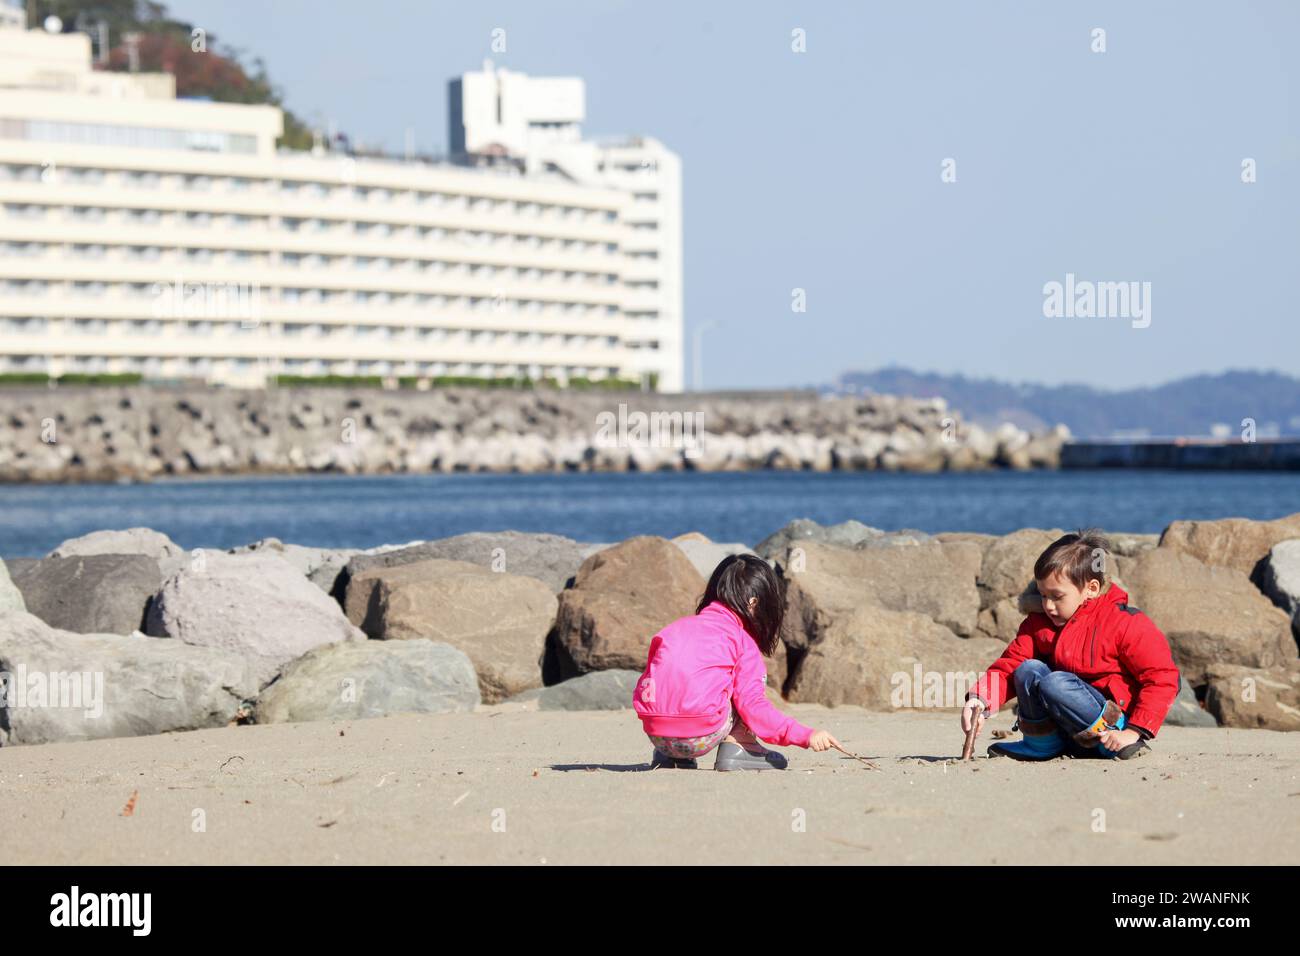 Spiaggia di Atami sulla penisola di Izu nella prefettura di Shizuopka, Giappone. Preso in una giornata di sole con un cielo blu e quasi nessuna gente intorno. Foto Stock